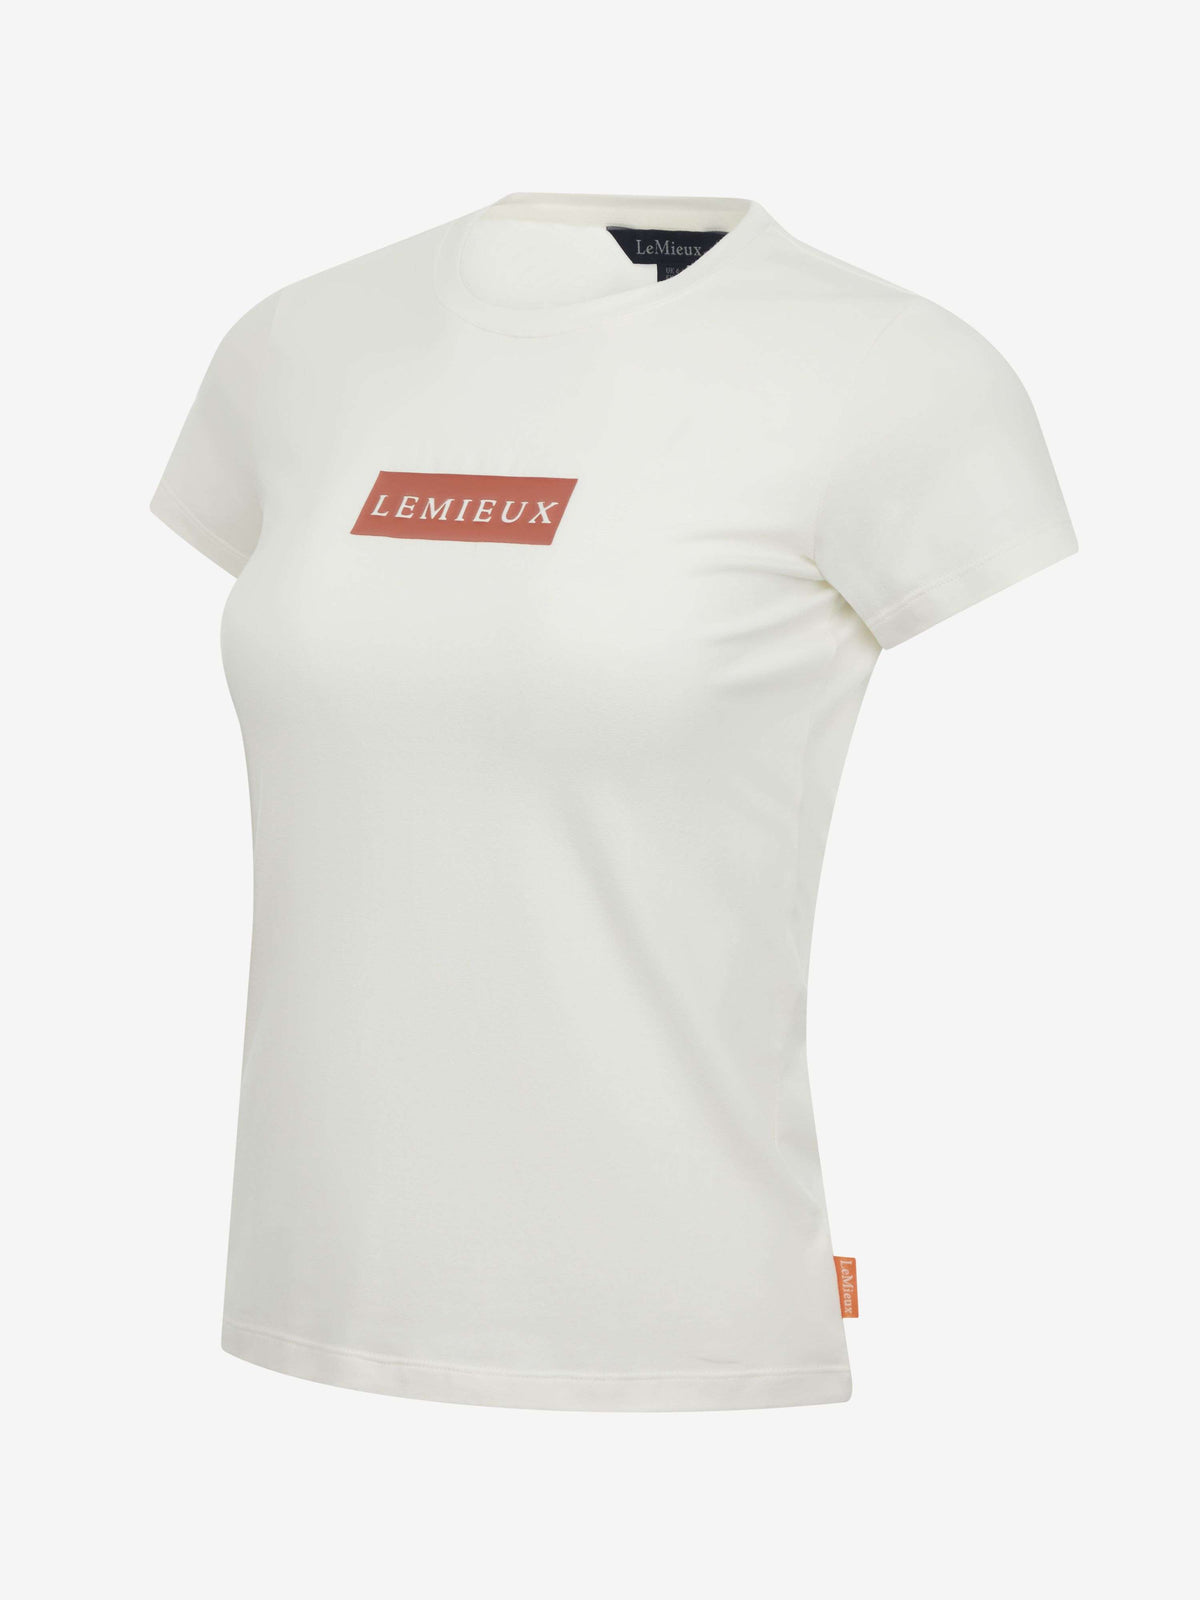 LeMieux T-Shirt Classique Ecru